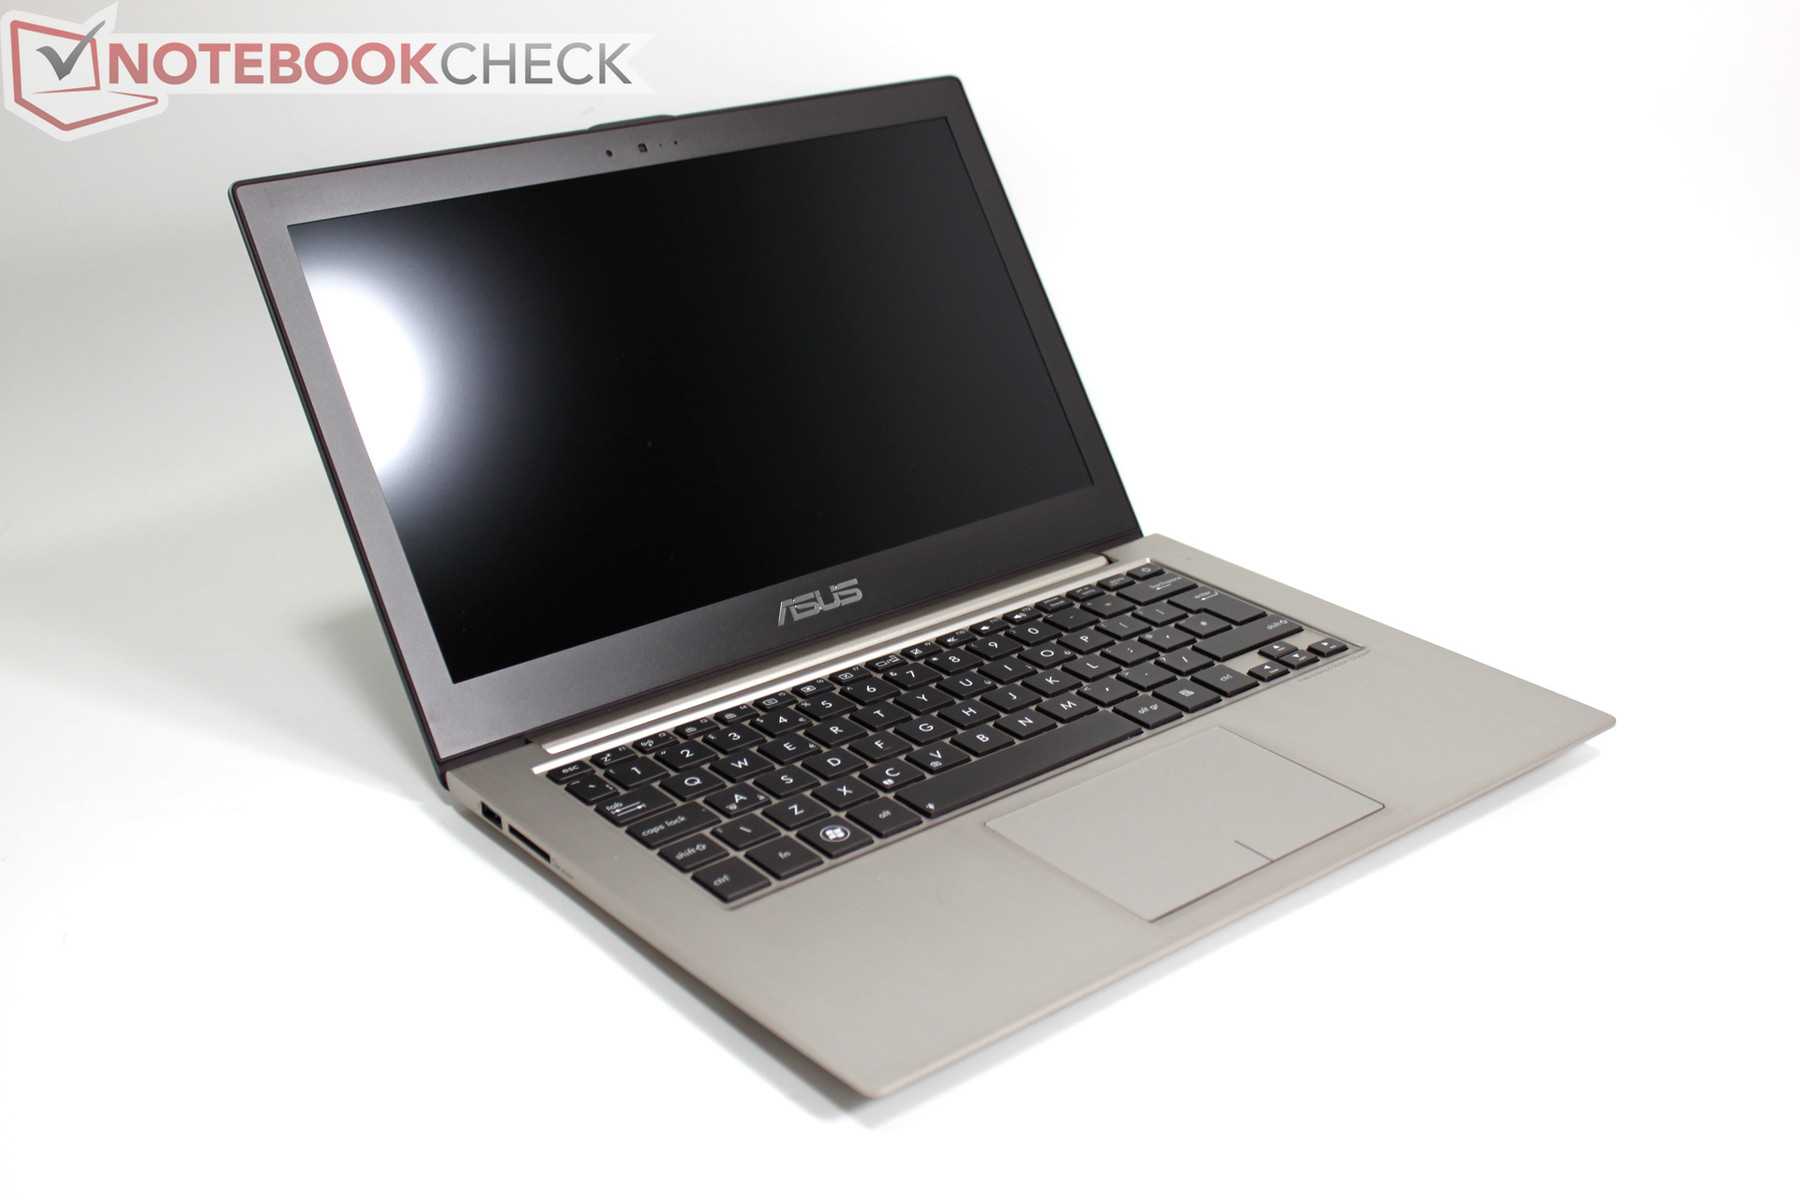 Asus zenbook ux32vd - описание, характеристики, тест, отзывы, цены, фото